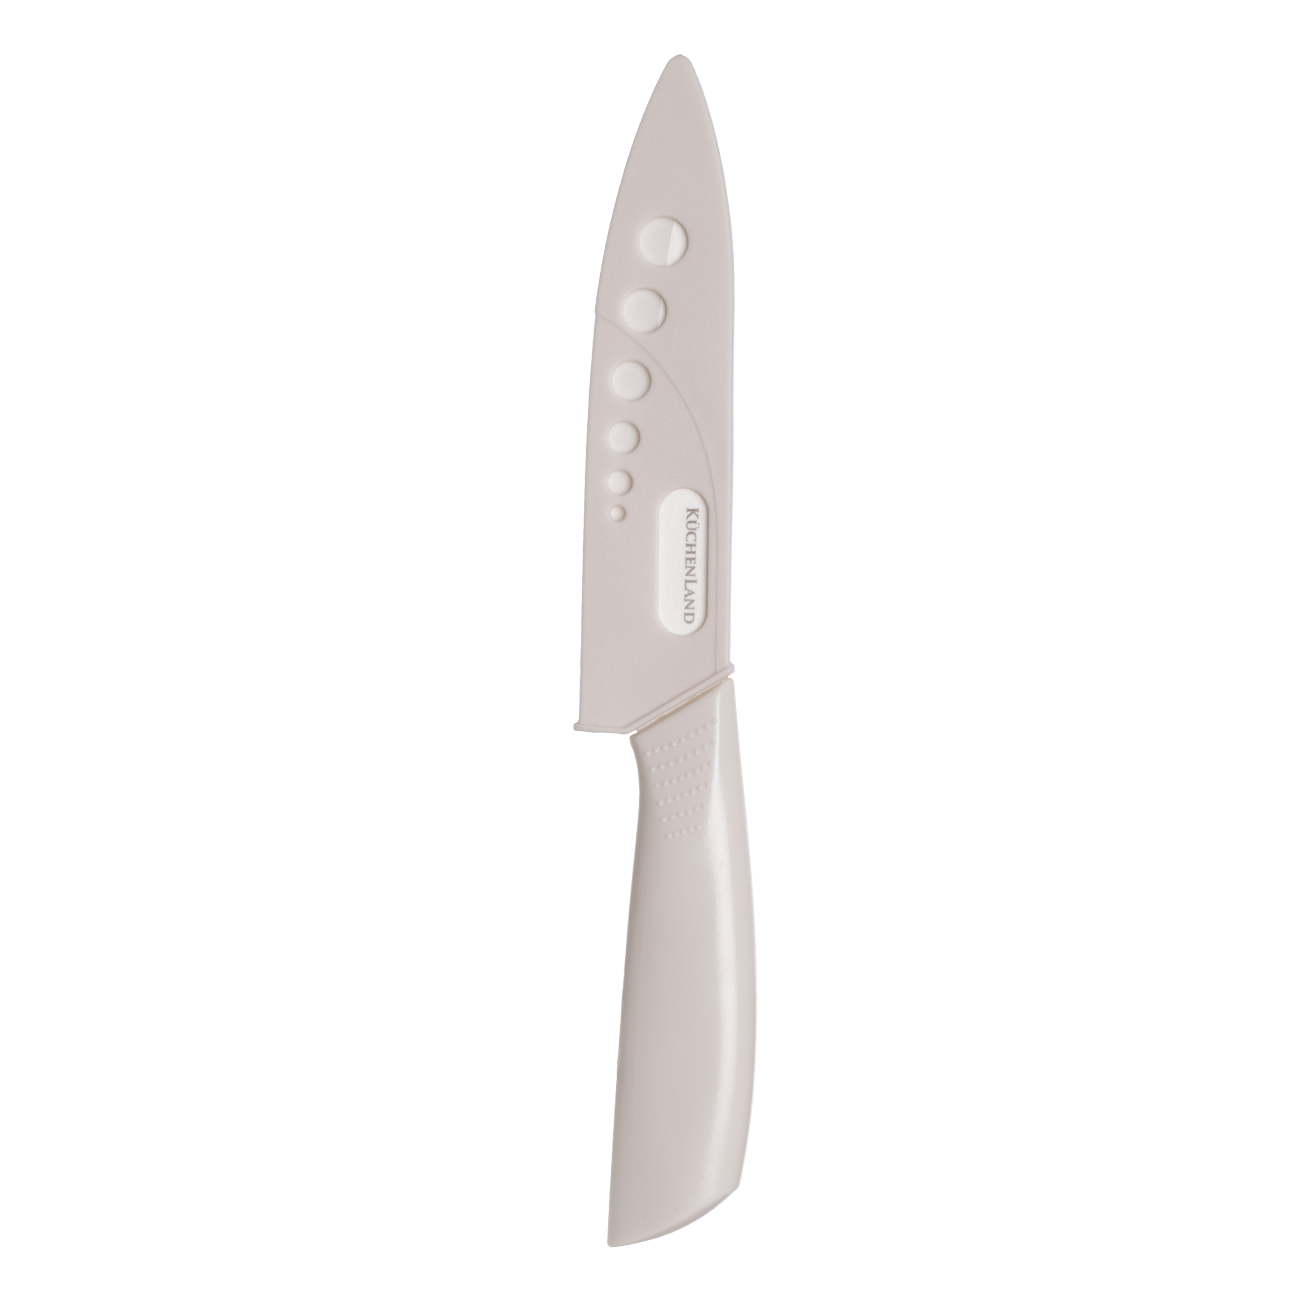 Paring knife, 10 cm, with case, ceramic/plastic, milk, Regular изображение № 3